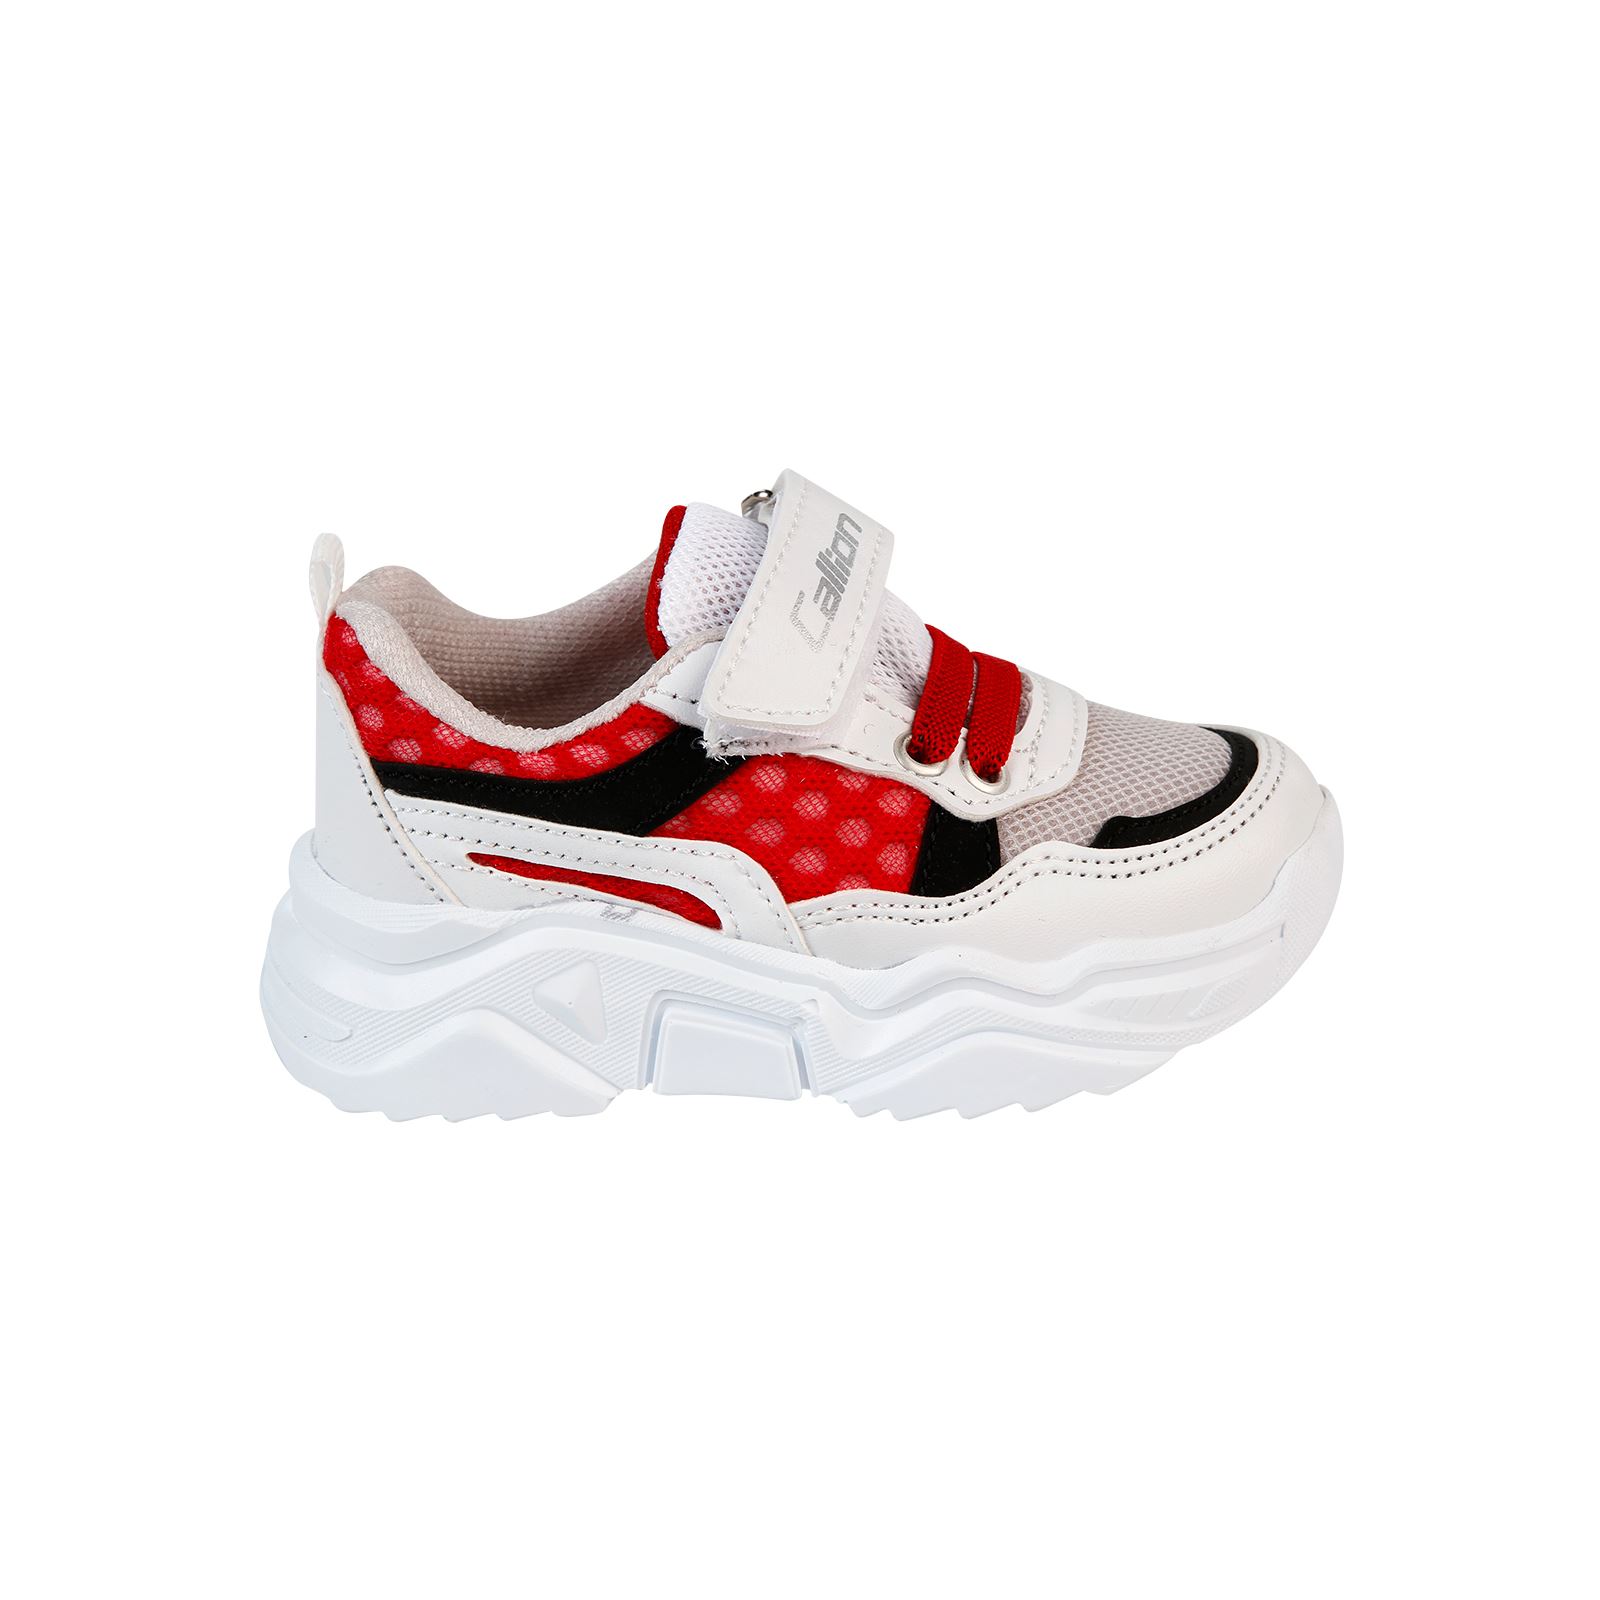 Callion Erkek Çocuk Spor Ayakkabı 22-25 Numara Beyaz-Kırmızı